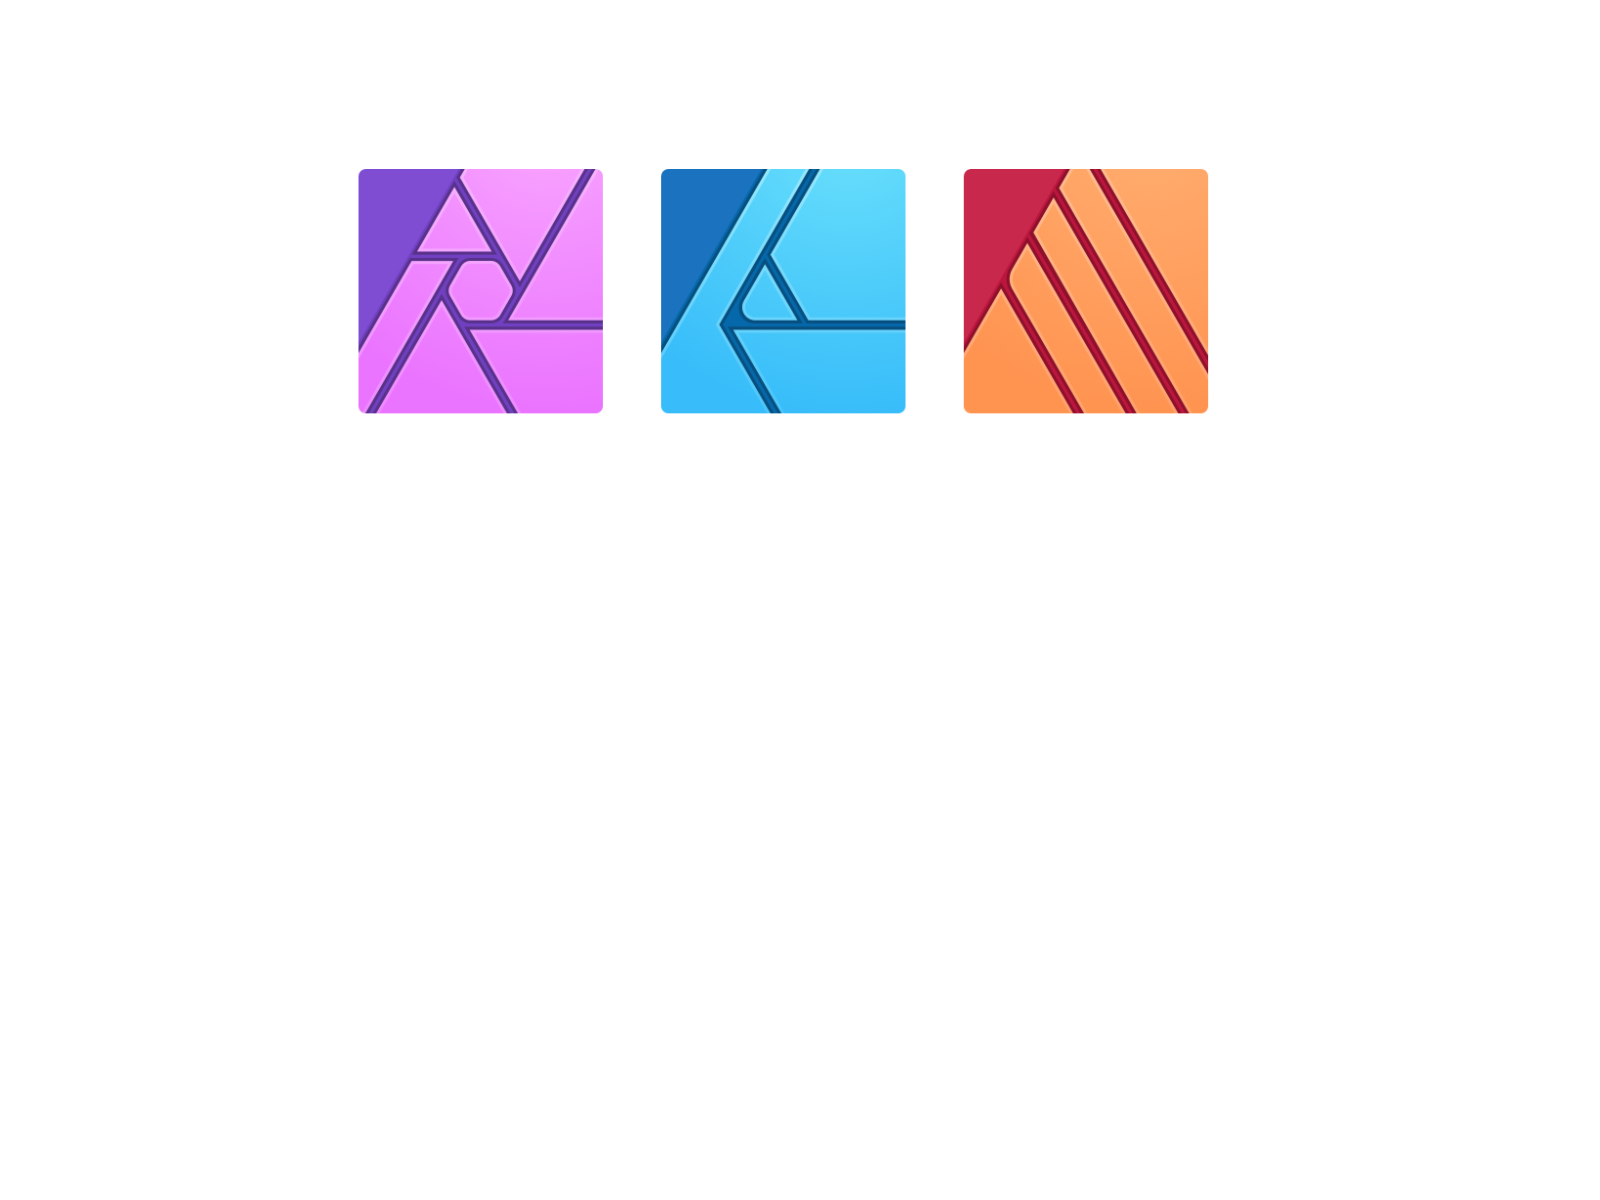 affinity designer beginner